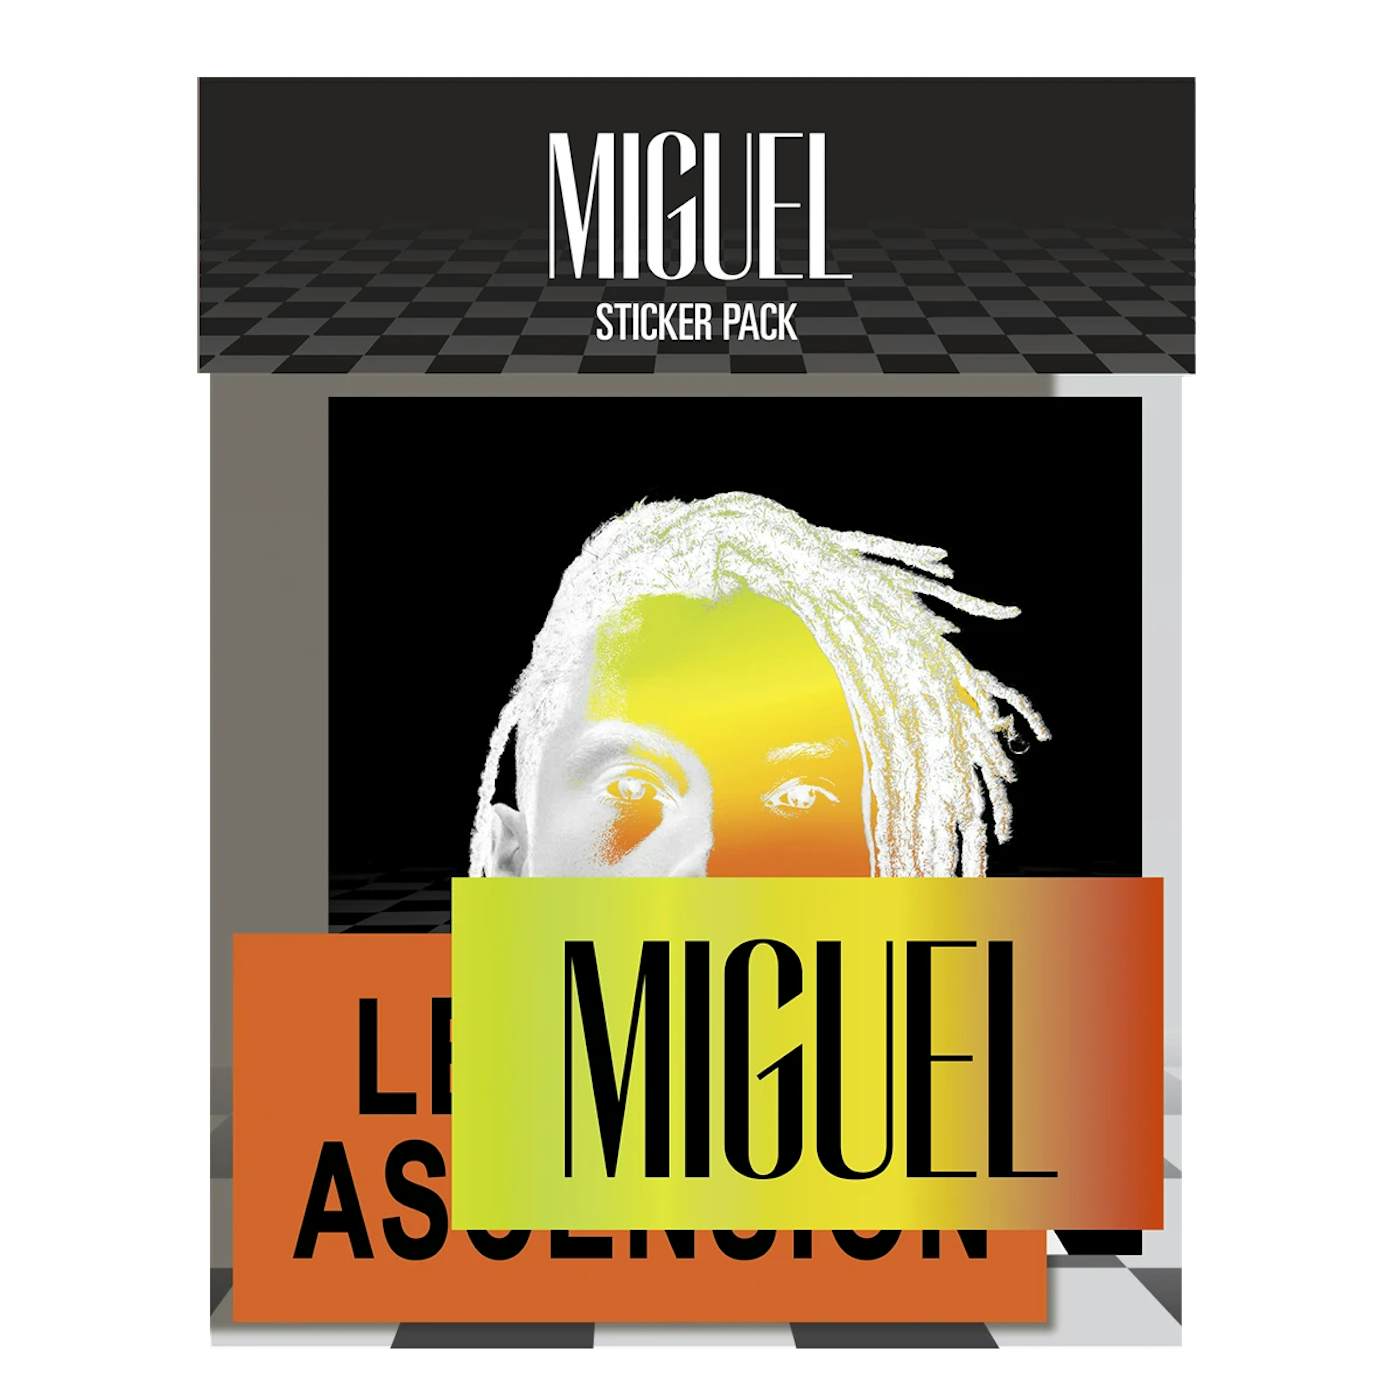 Miguel Sticker Pack